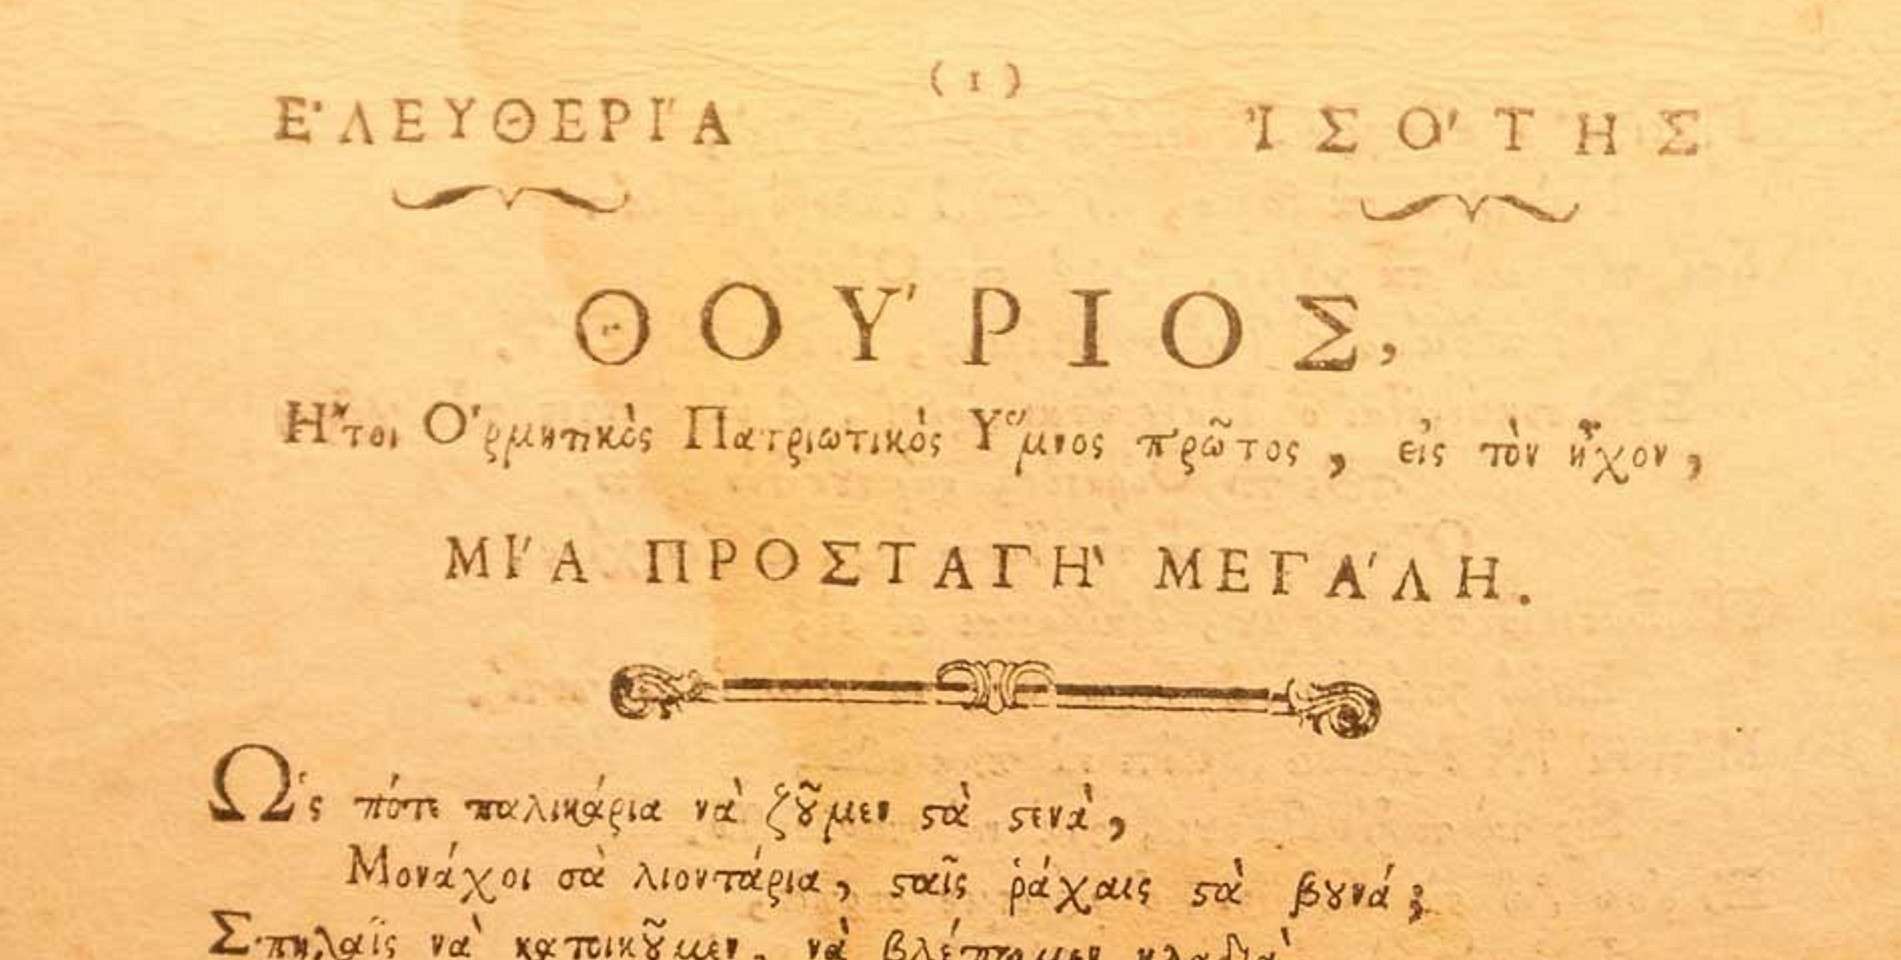 Φυλλάδιο του Θούριου (απόσπασμα) από το 1798. Αναγράφεται το γνωστό τραγούδι της Ιερισσού «Μια Προσταγή Μεγάλη». Βιβλιοθήκη Ακαδημίας Αθηνών